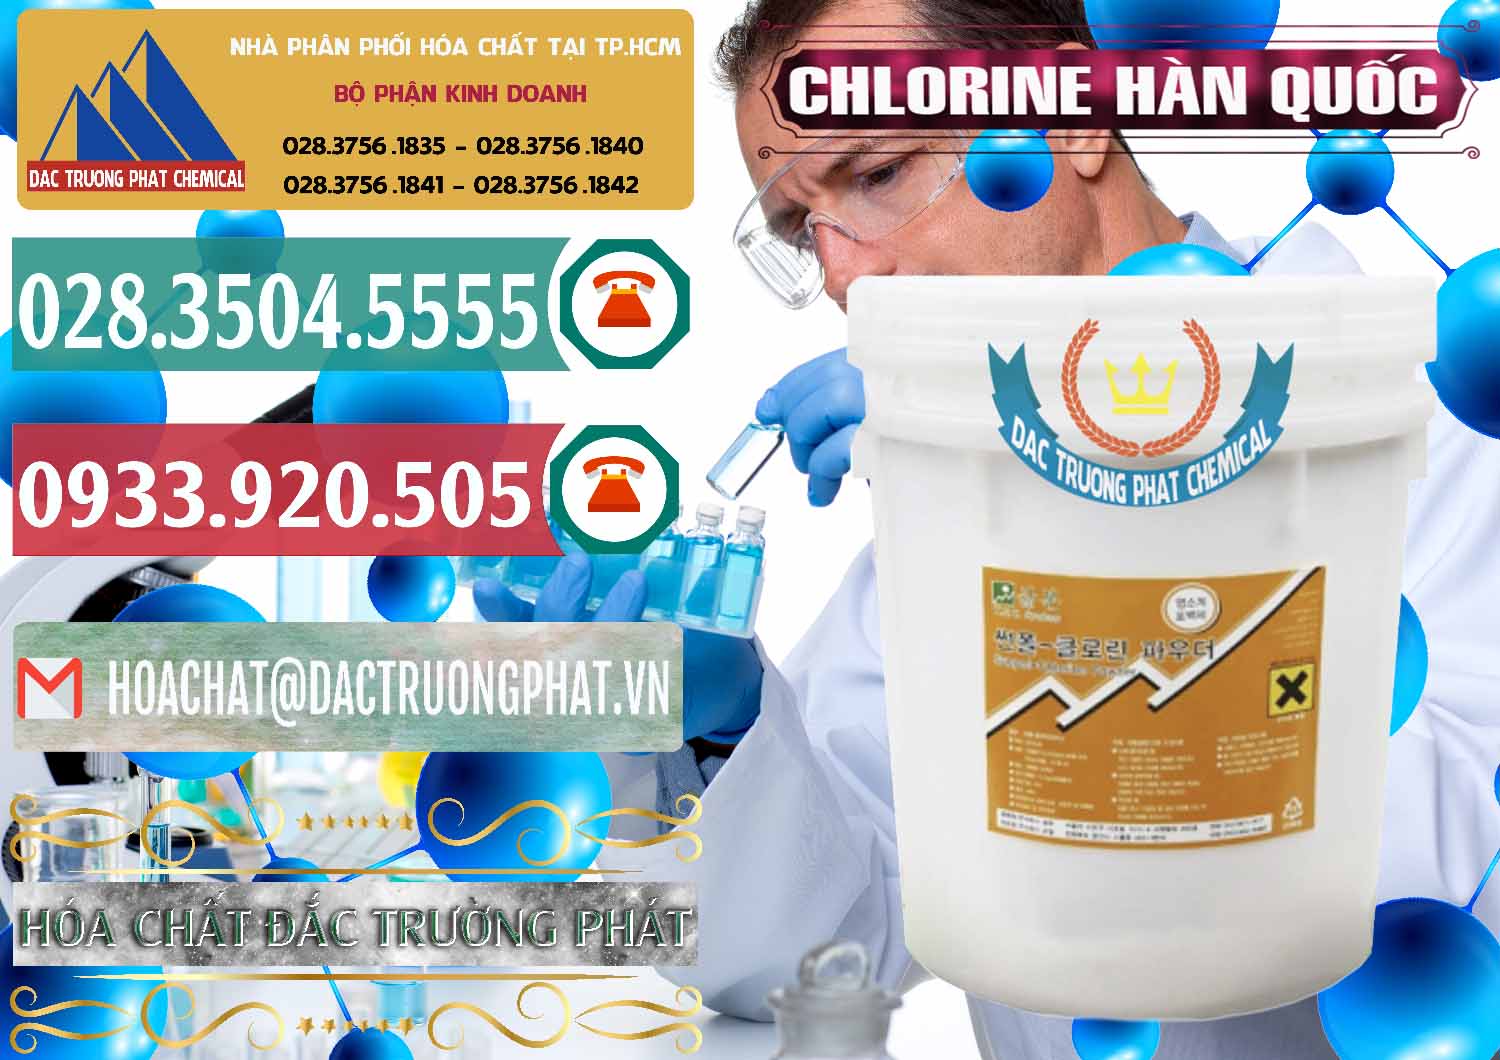 Cty bán _ cung cấp Chlorine – Clorin 70% Hàn Quốc Korea - 0345 - Cty phân phối - cung ứng hóa chất tại TP.HCM - muabanhoachat.vn